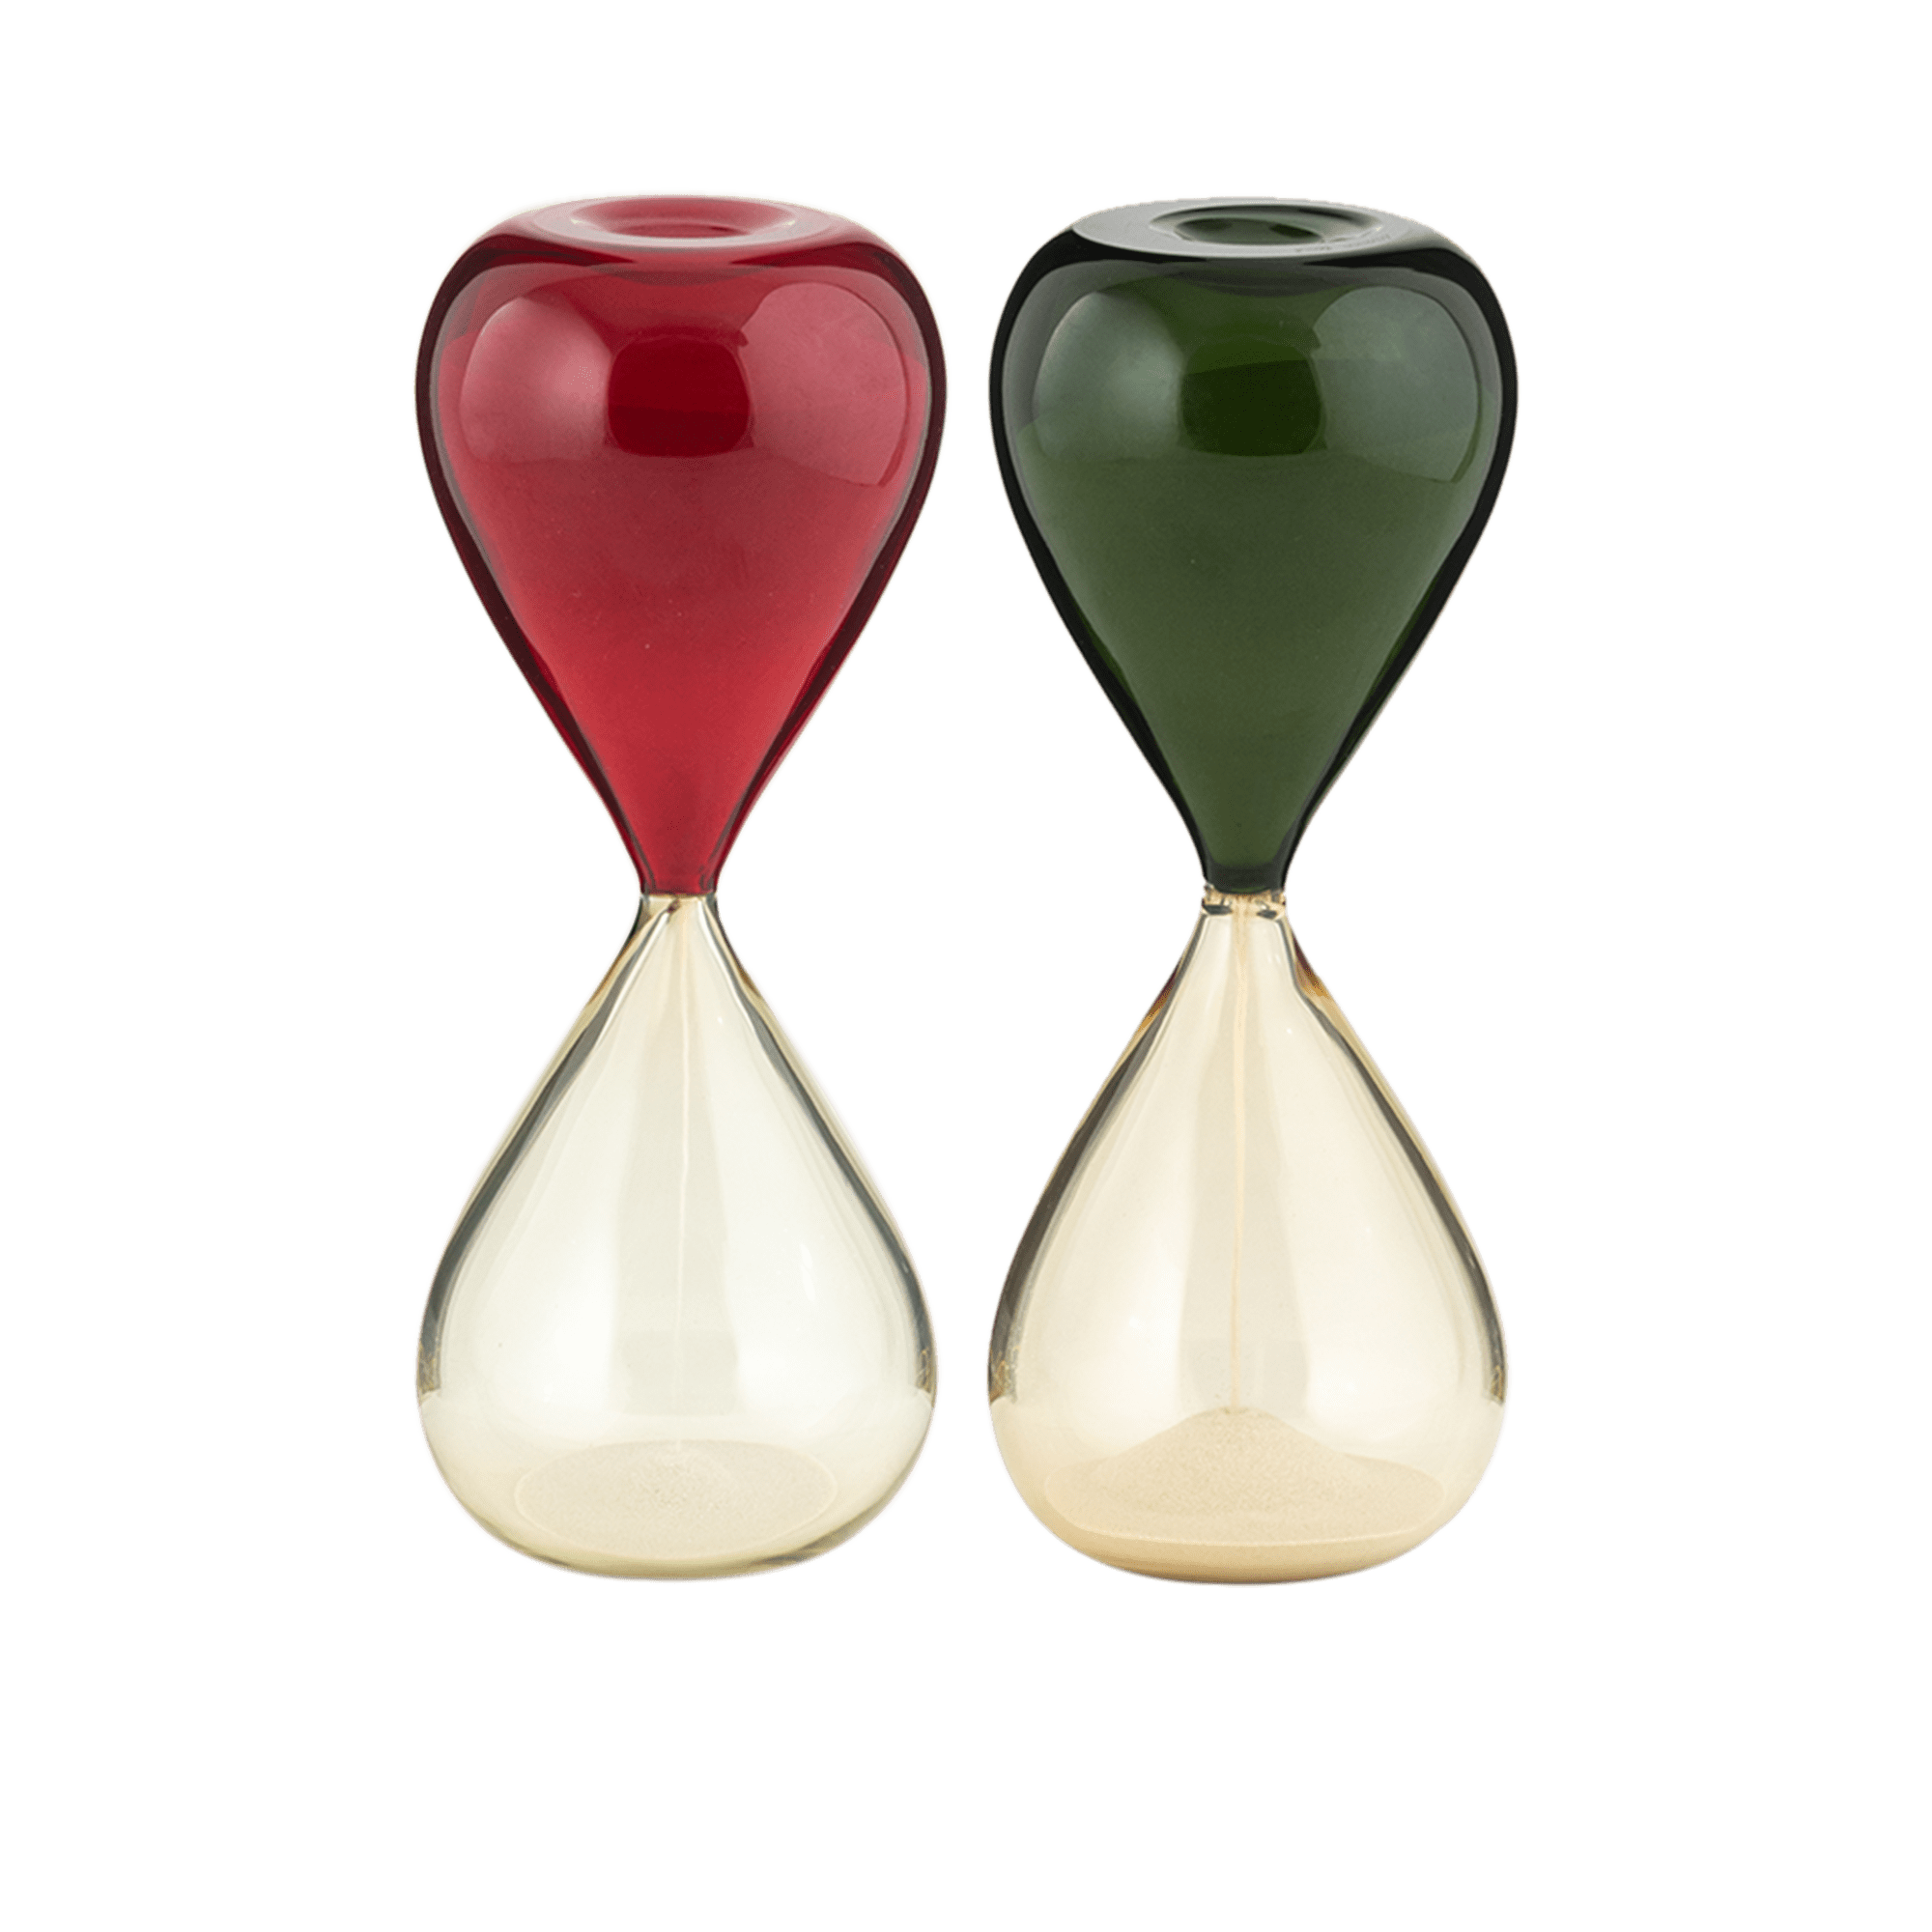 CLESSIDIRE Glass Vase